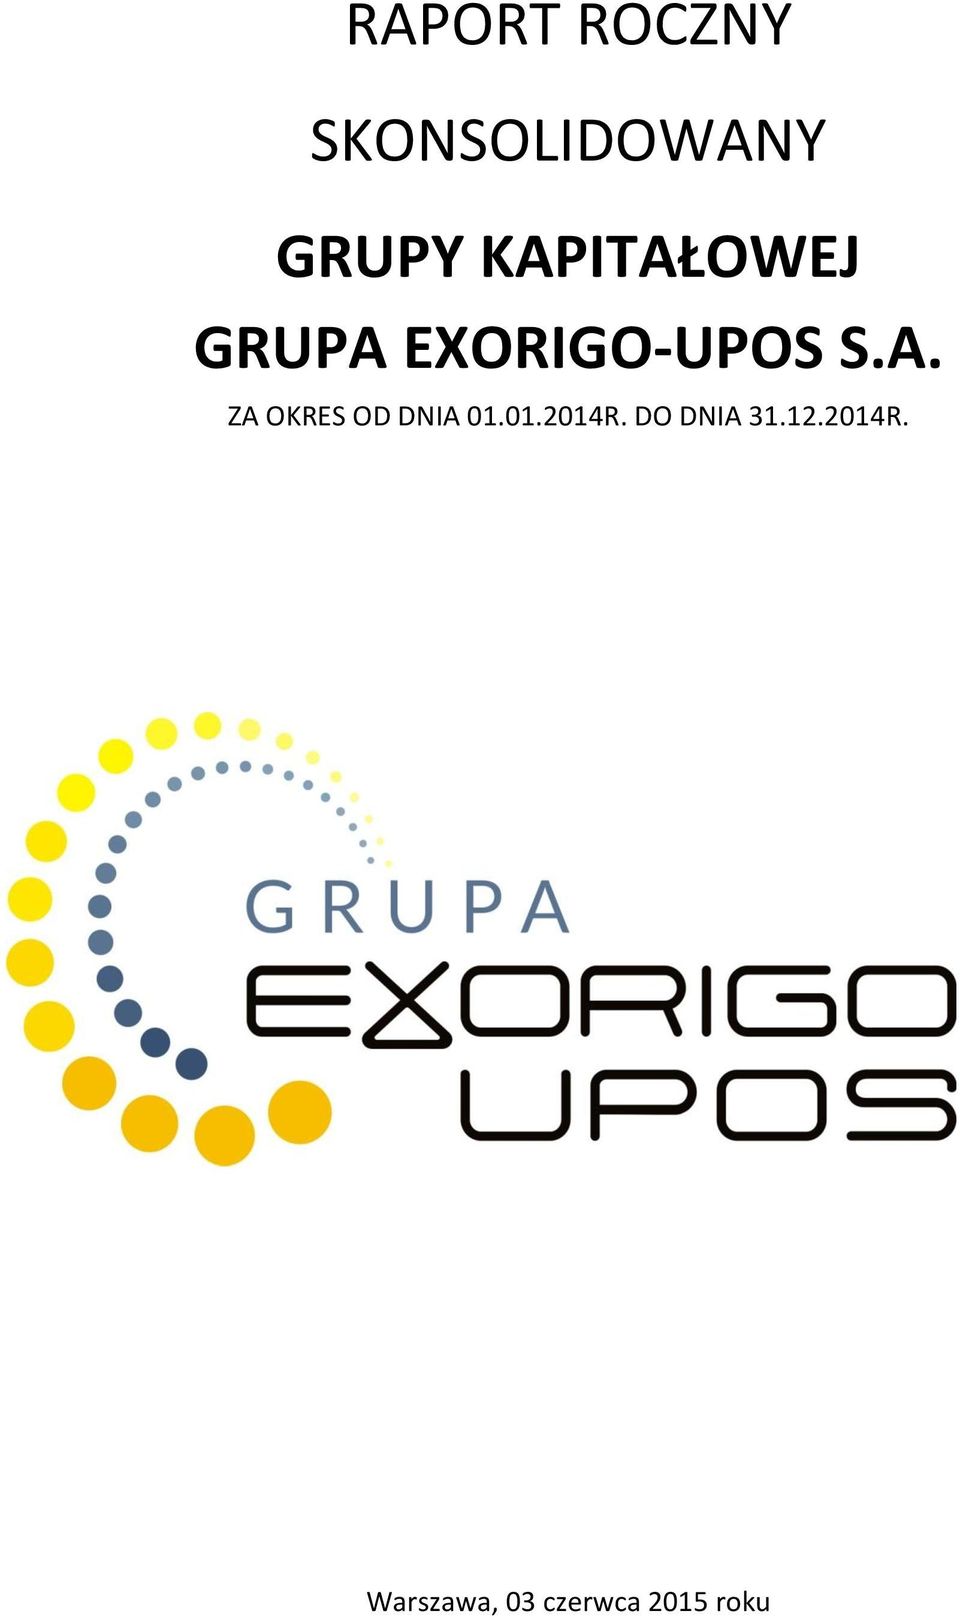 EXORIGO-UPOS S.A.